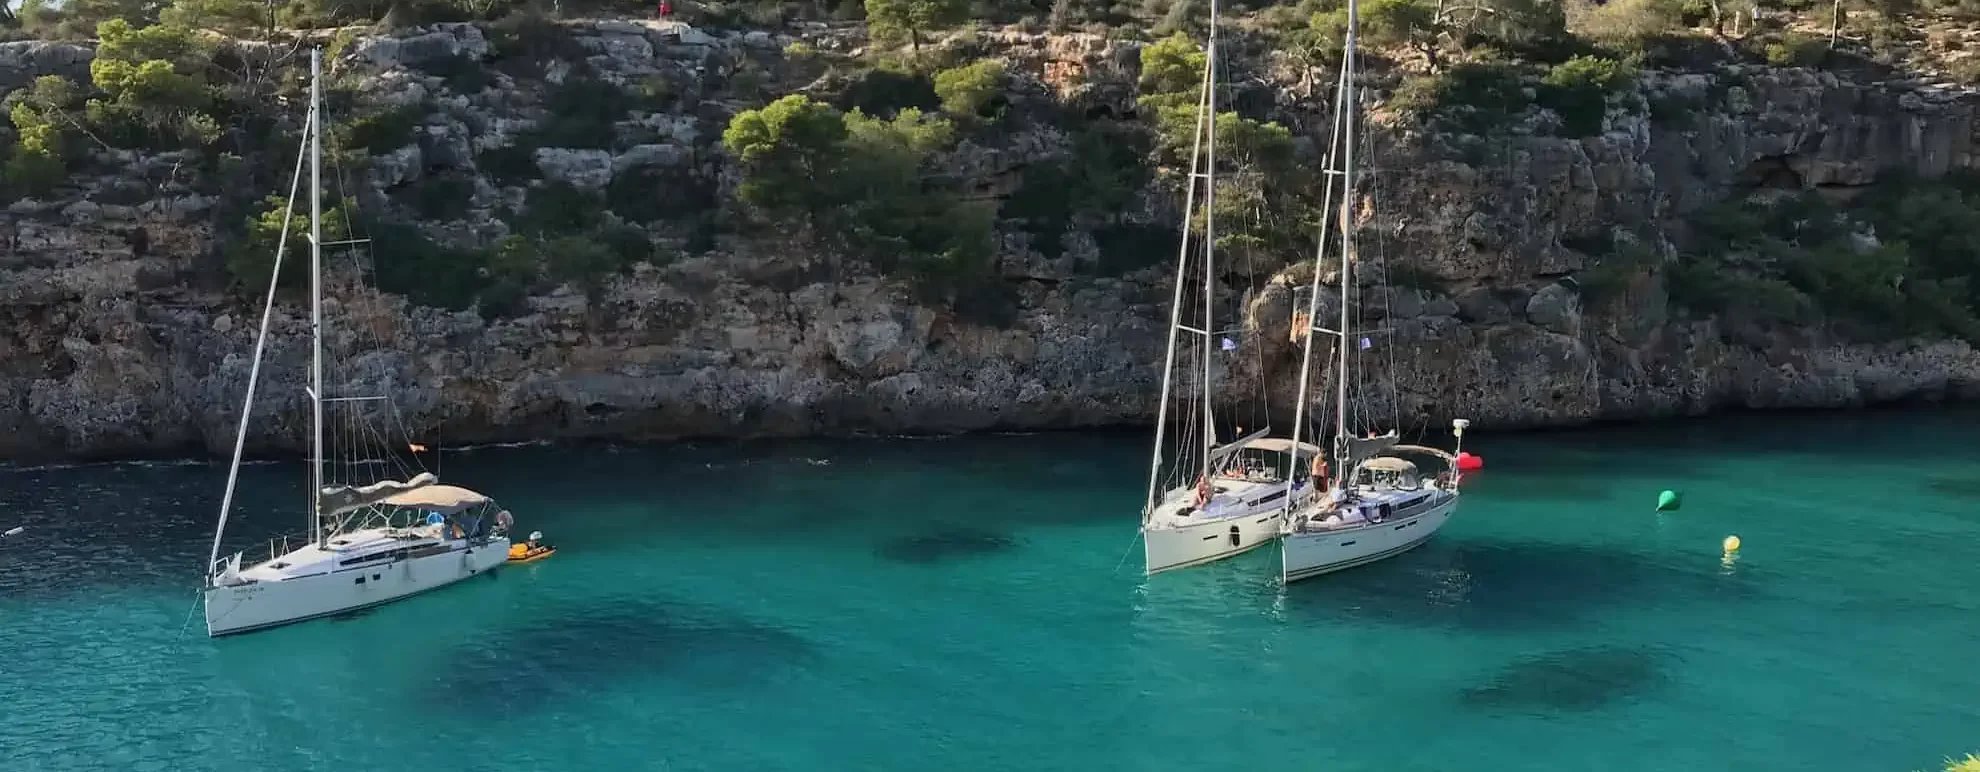 Rejs Majorka Ibiza 2017 - jachty Dostawców Emocji